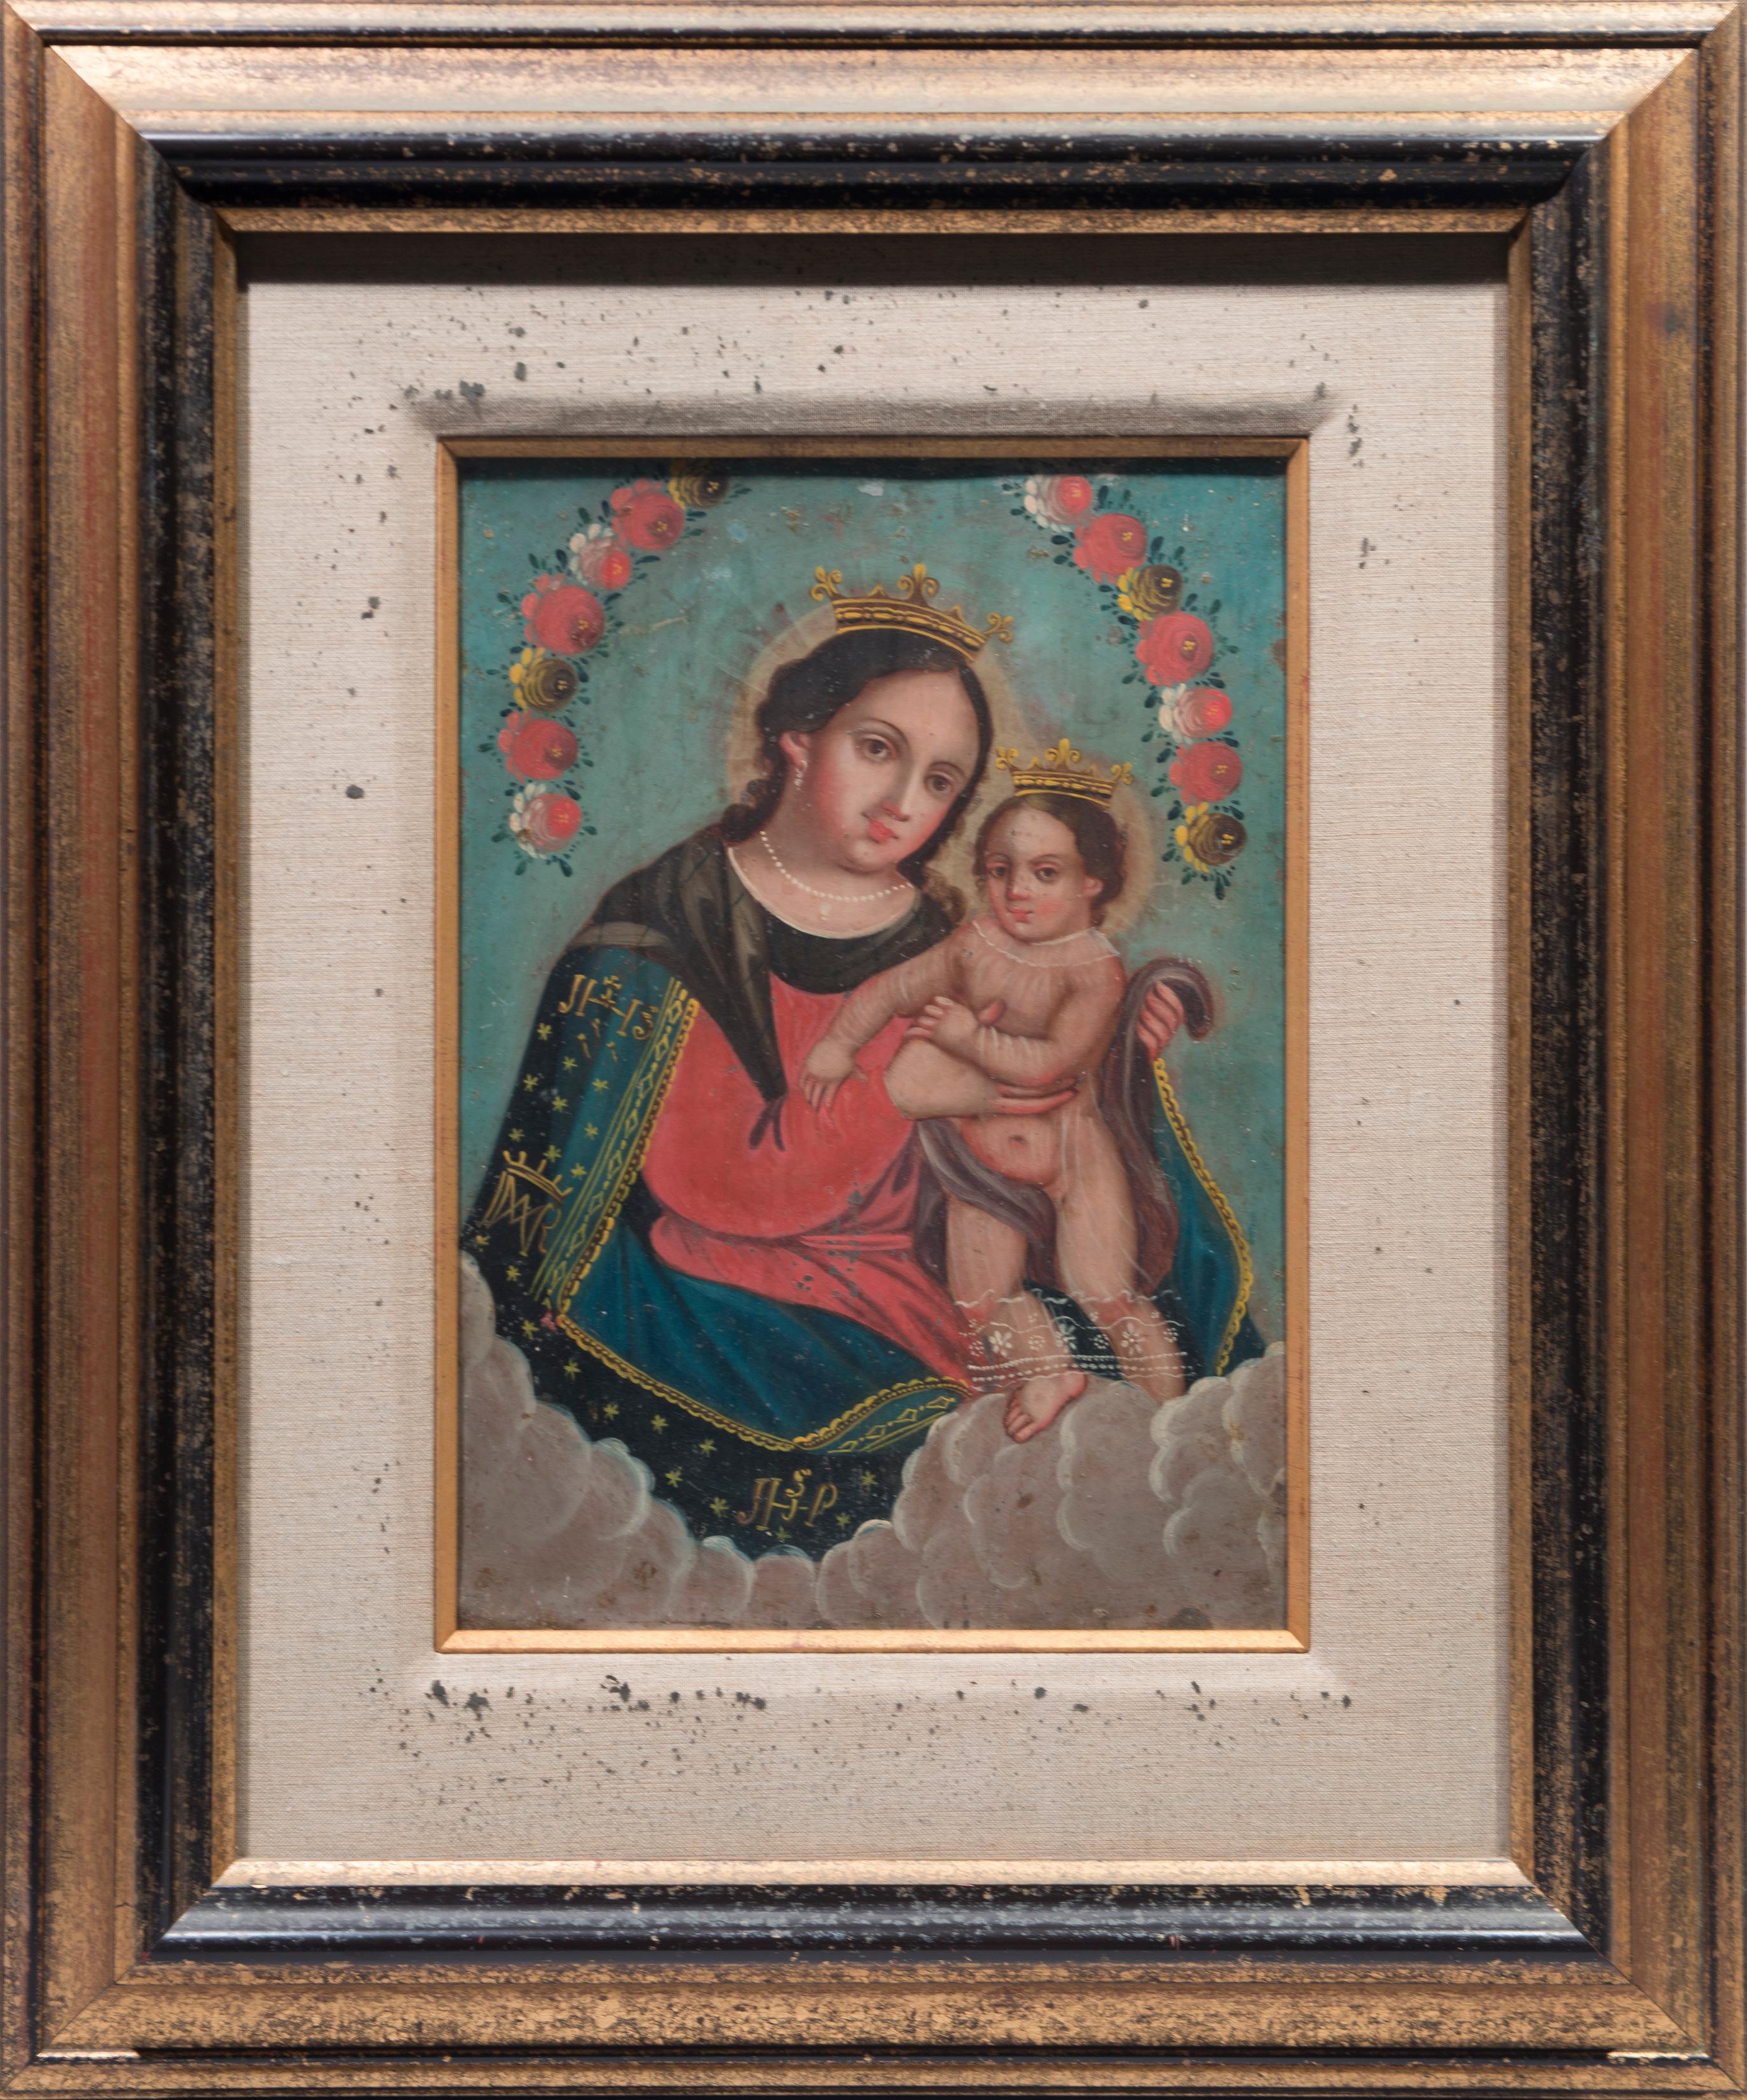 Nuestra Señora Del Refugio. Measures: 24.75 x 20.5 inches framed.